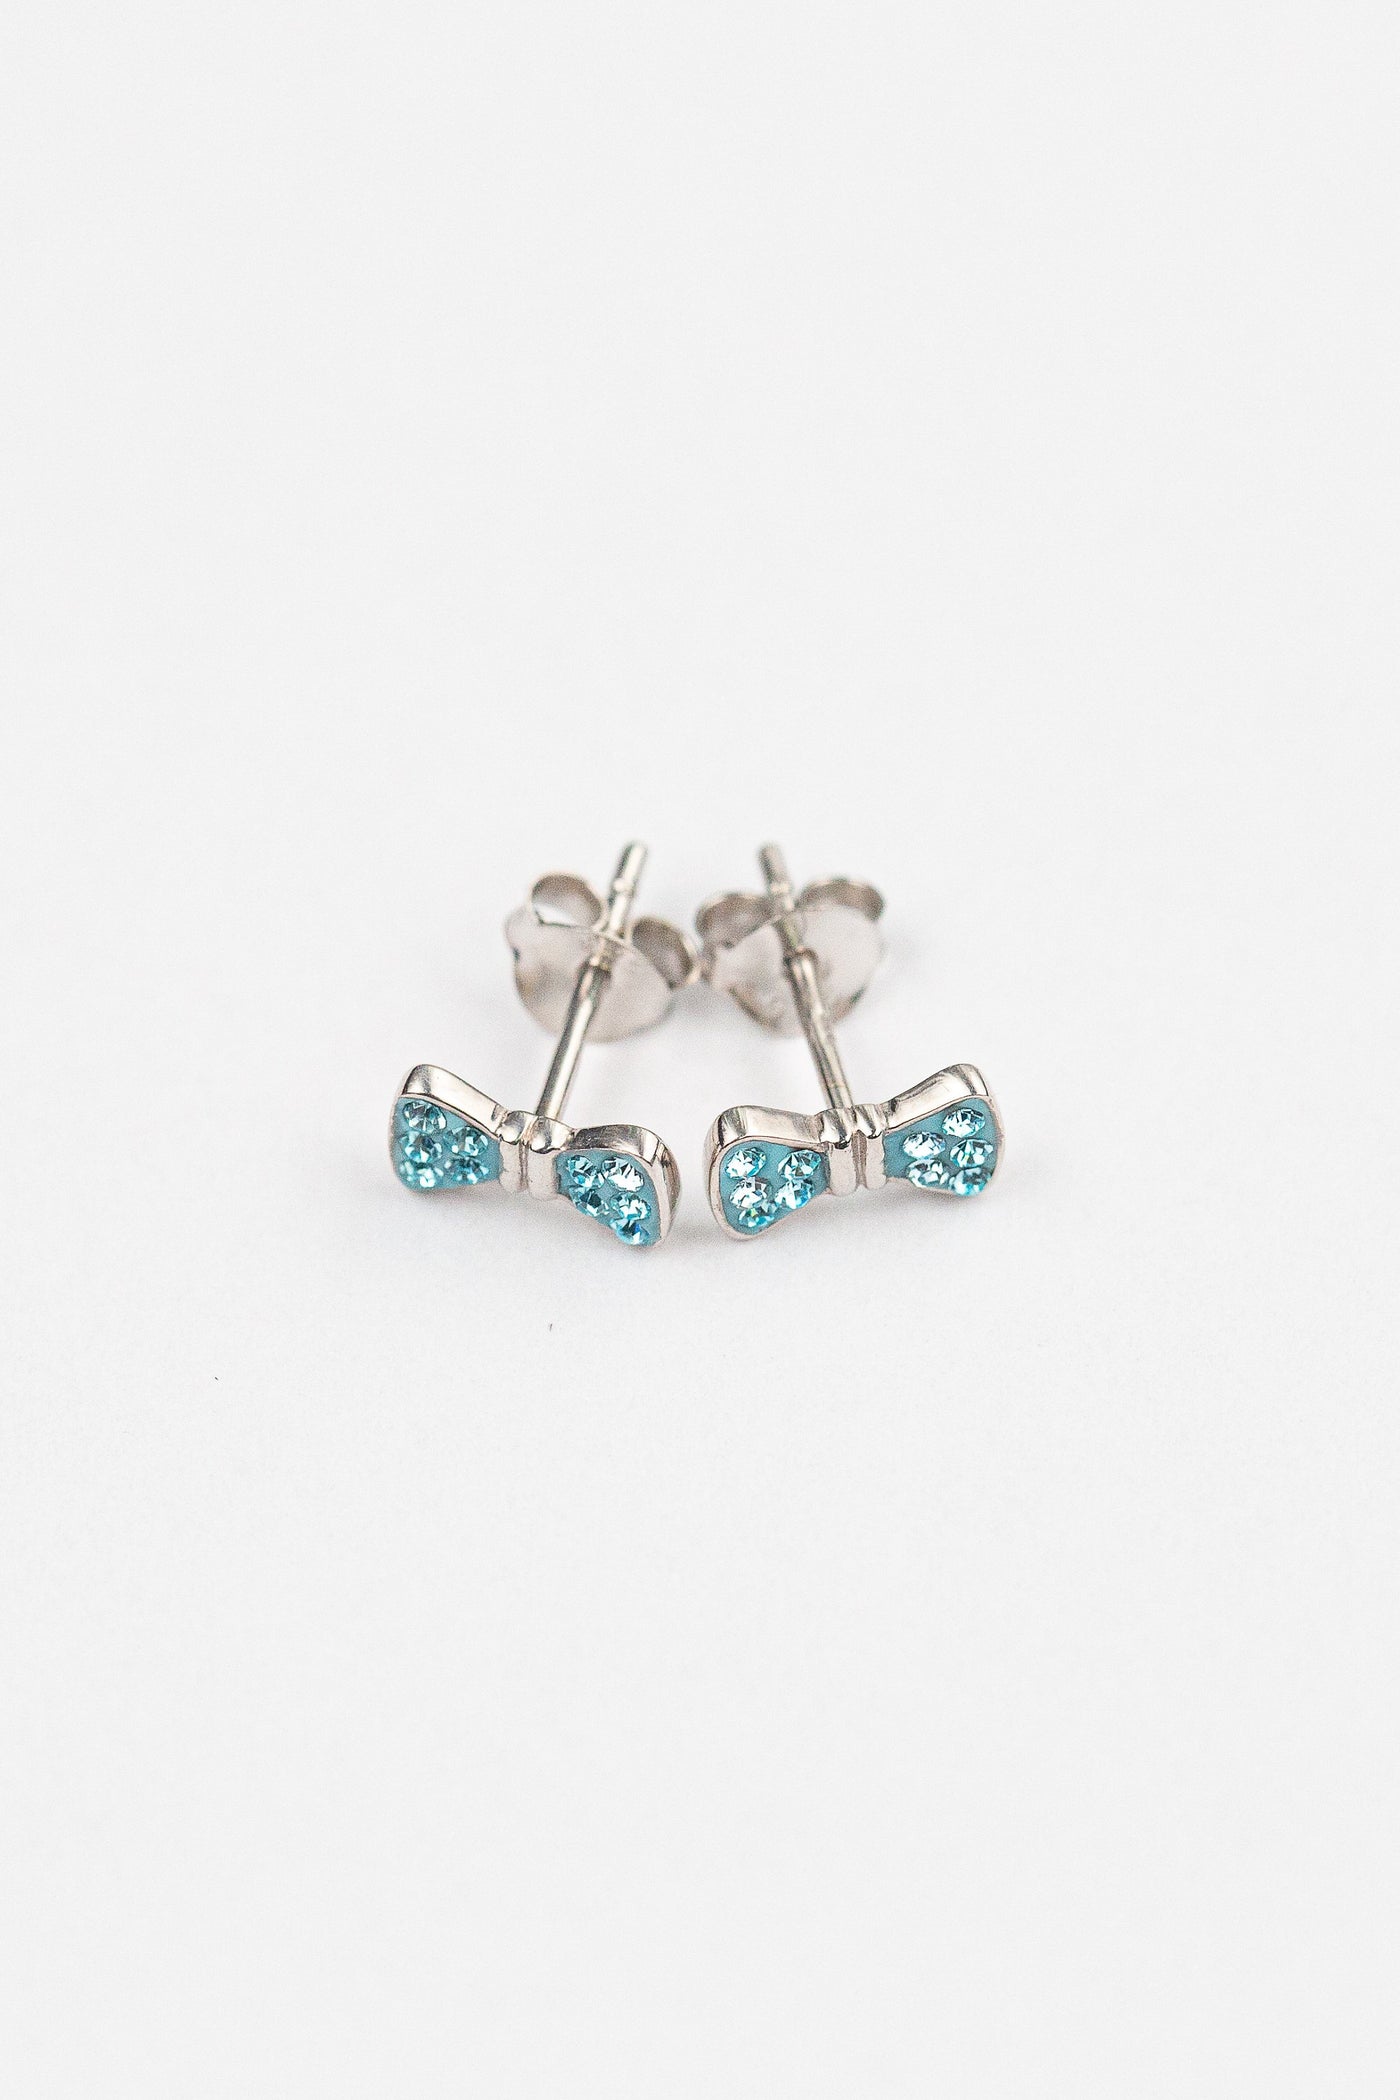 Bow Crystal Silver Stud Earrings in Light Turquoise | Annie and Sisters | sister stud earrings, for kids, children's jewelry, kid's jewelry, best friend